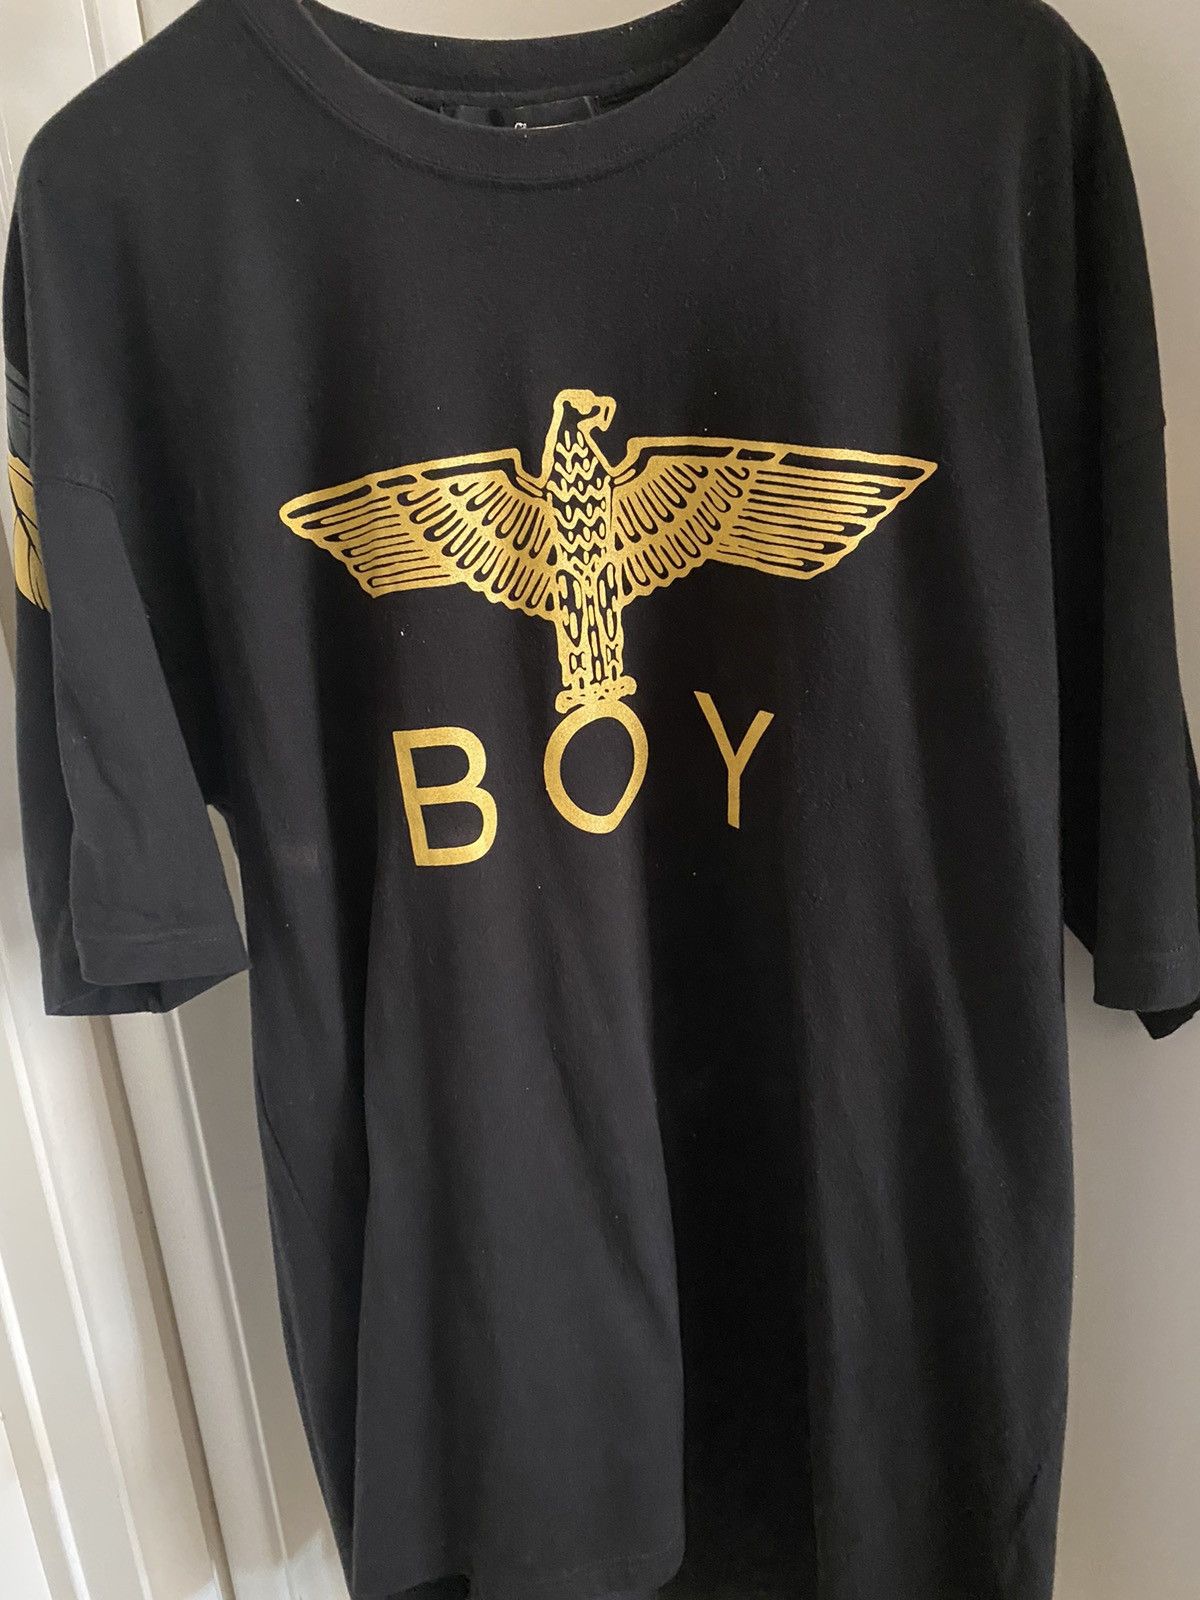 Boy London Boy London black/gold wings T shirt size M | Grailed